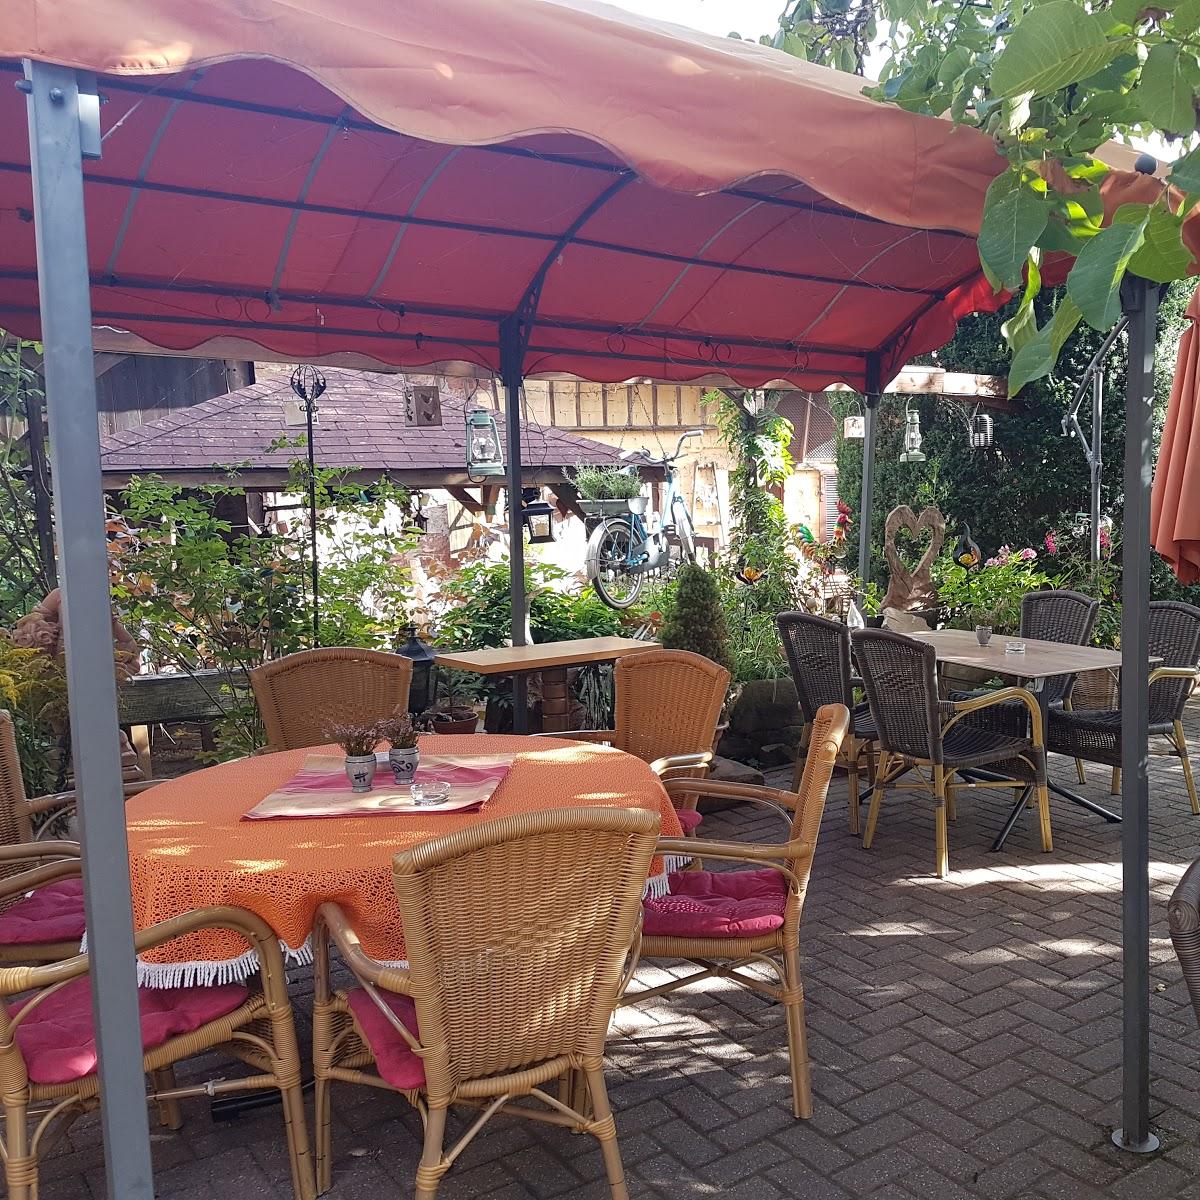 Restaurant "Zum alten Nussbaum" in  Schwanheim